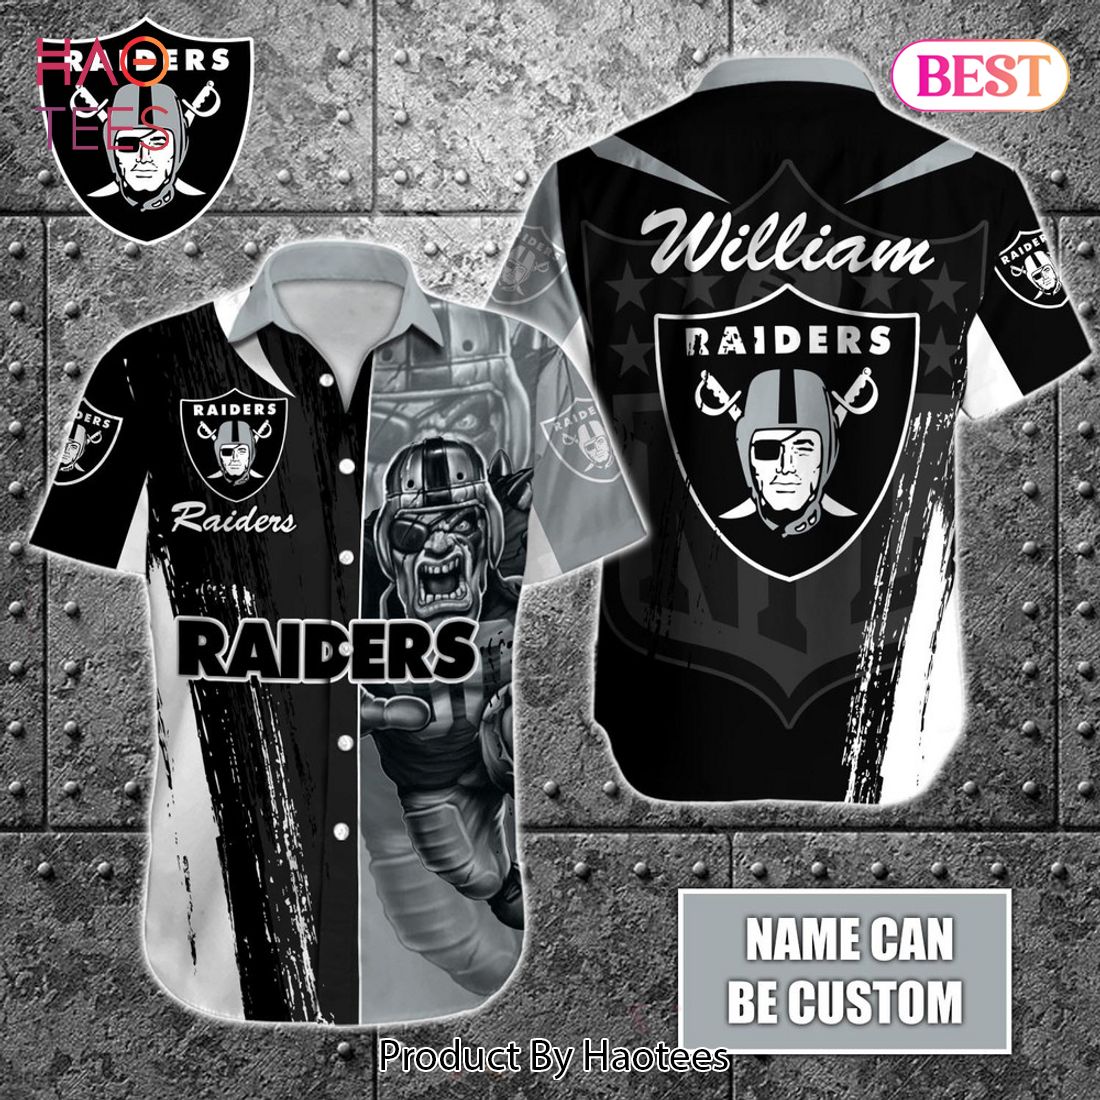 Las Vegas Raiders Football Club NFL T-Shirt - Trends Bedding